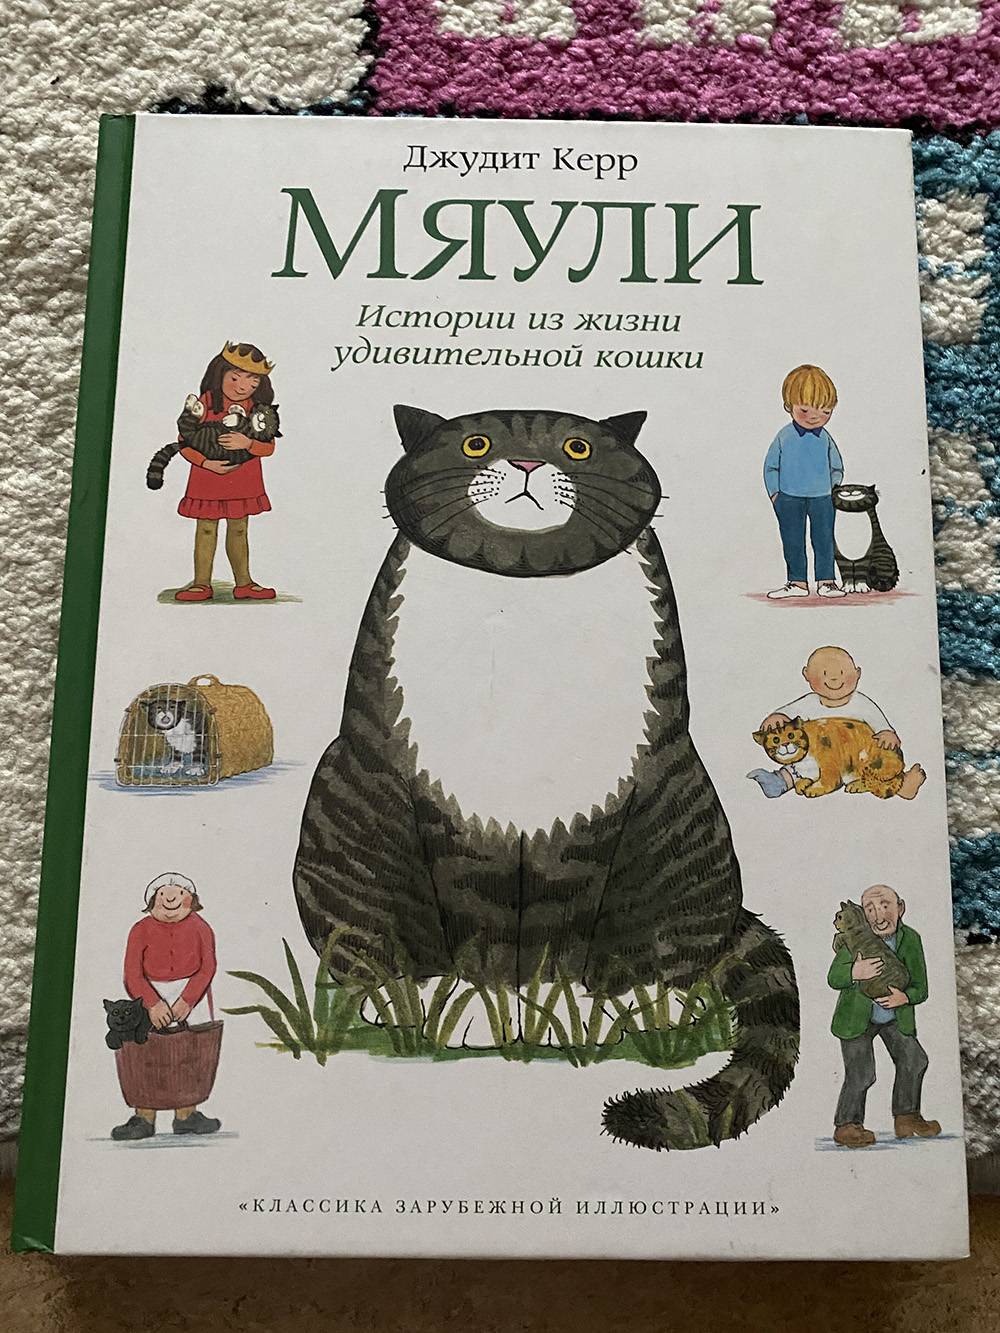 Книжка про&nbsp;Мяули мне нравится, хоть мне и не близки методы воспитания кошки